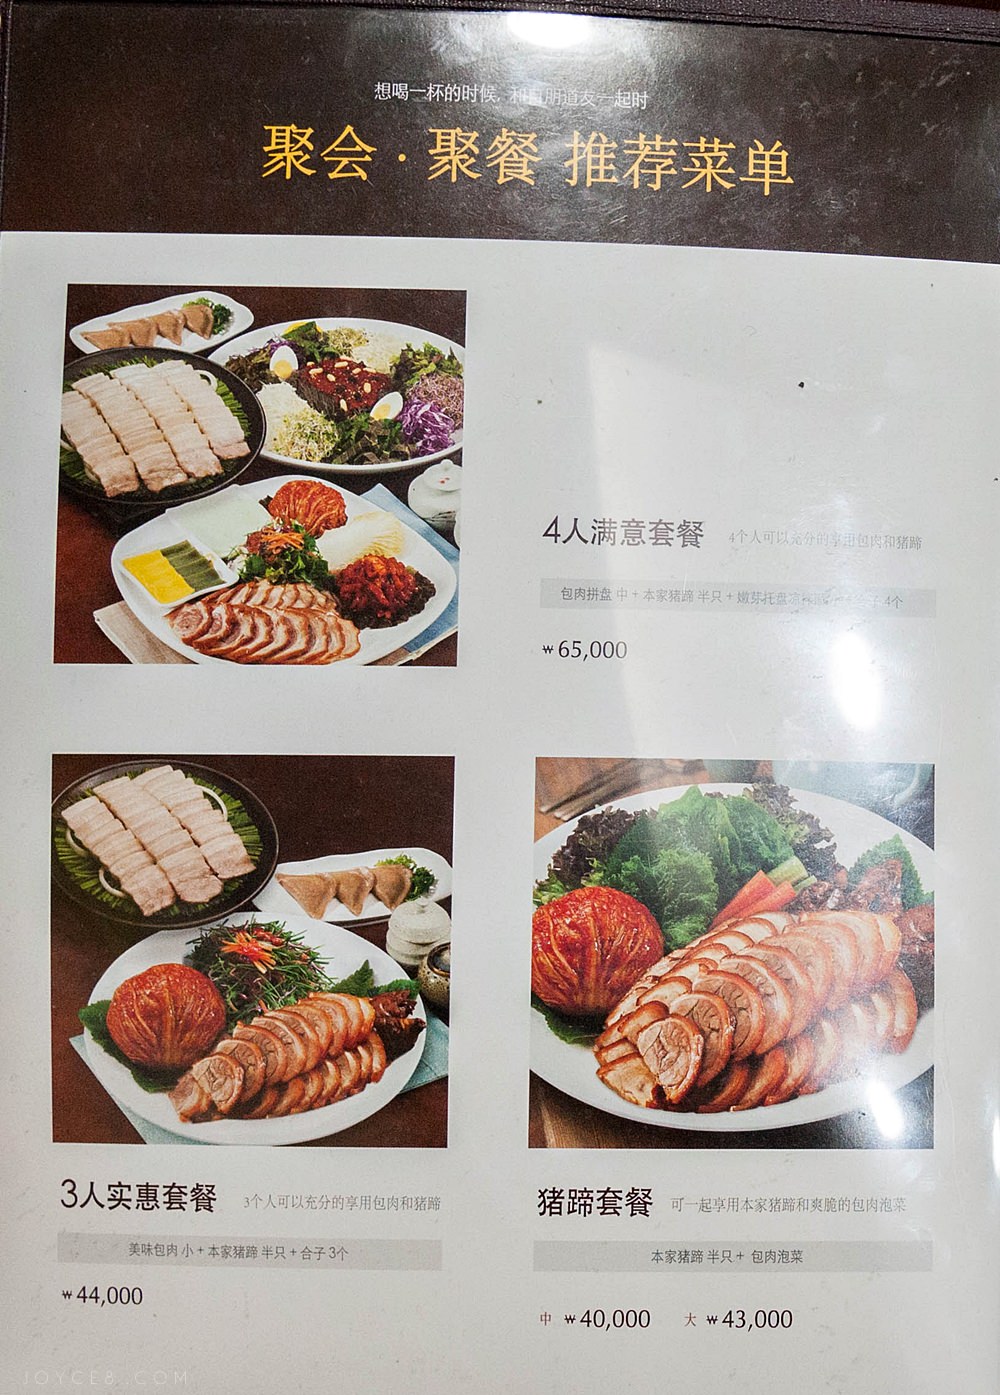 元祖奶奶菜包肉,梨大美食,梨大餐廳,梨大元祖奶奶菜包肉,梨大美食推薦,韓國菜包肉